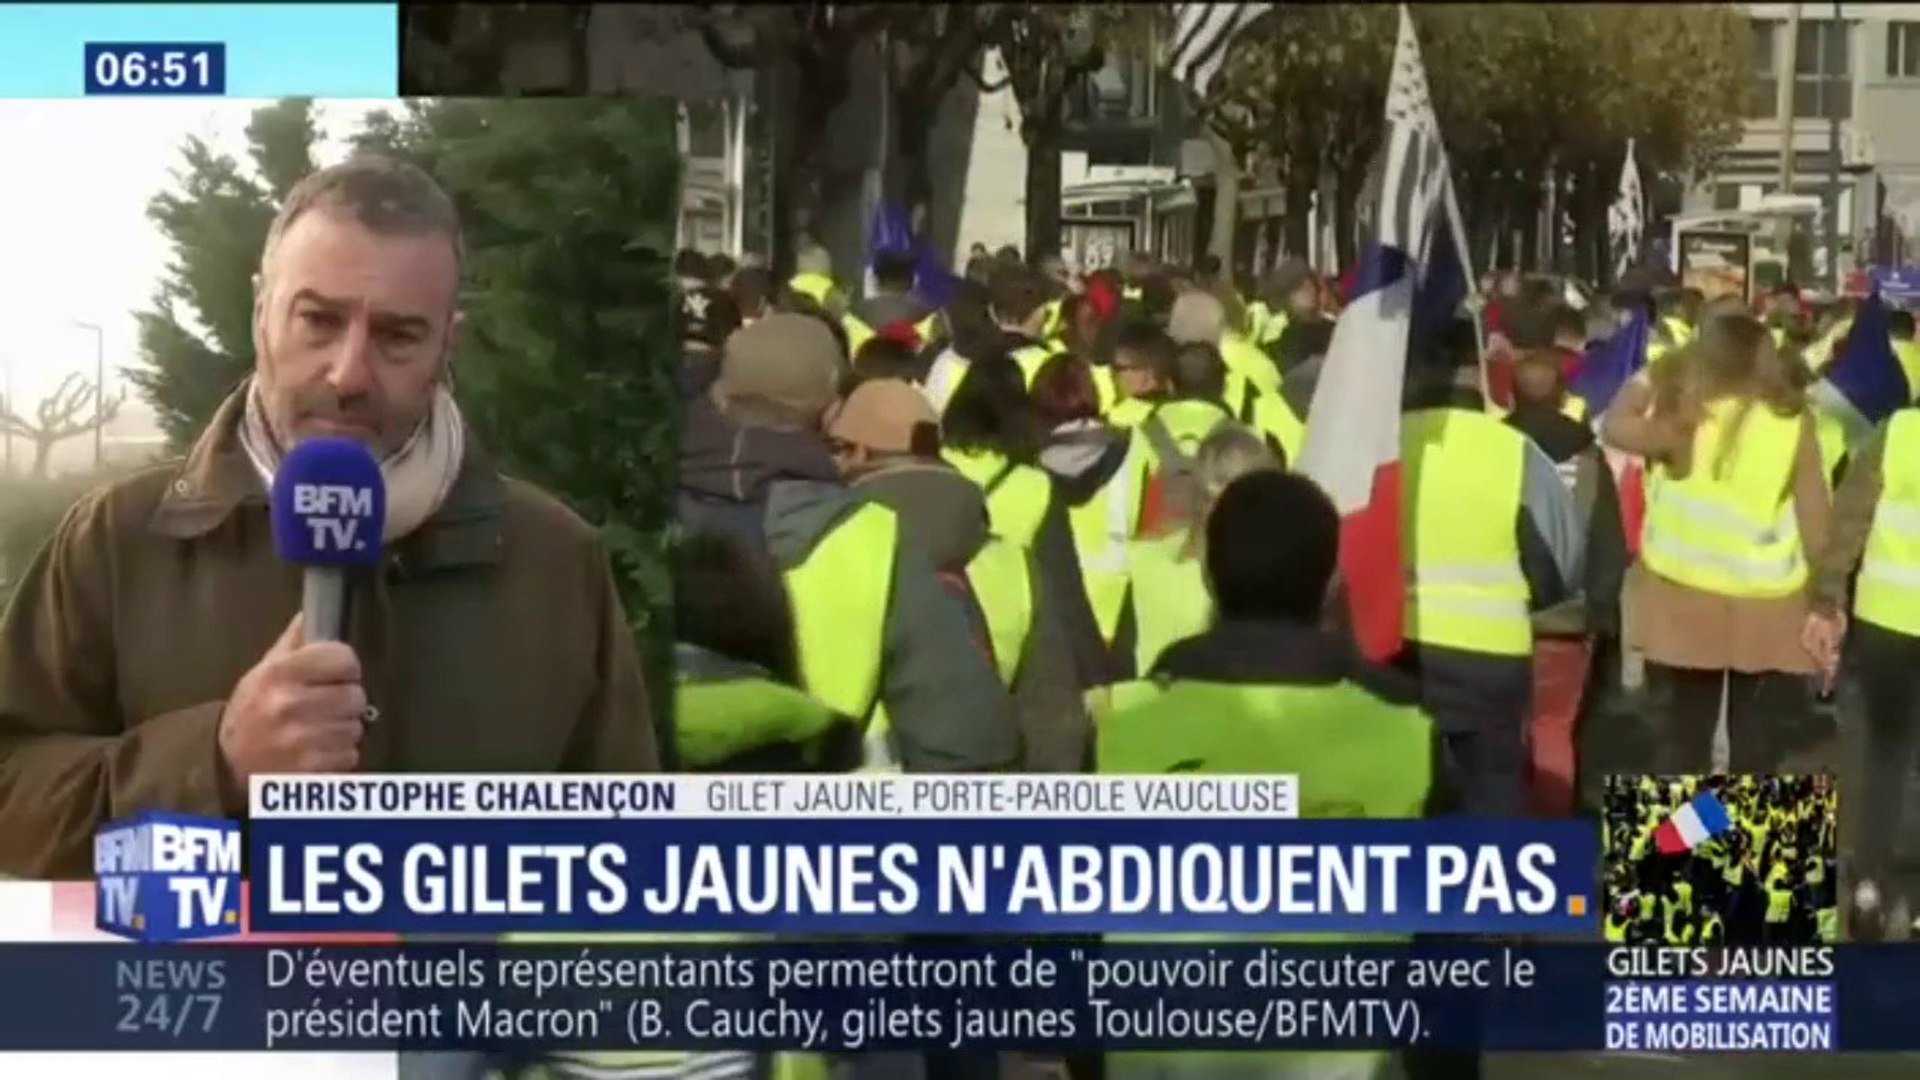 Christophe Chalençon, gilet jaune: "il y a des appels à manifester samedi  et je pense que la mobilisation sera encore plus forte" - Vidéo Dailymotion